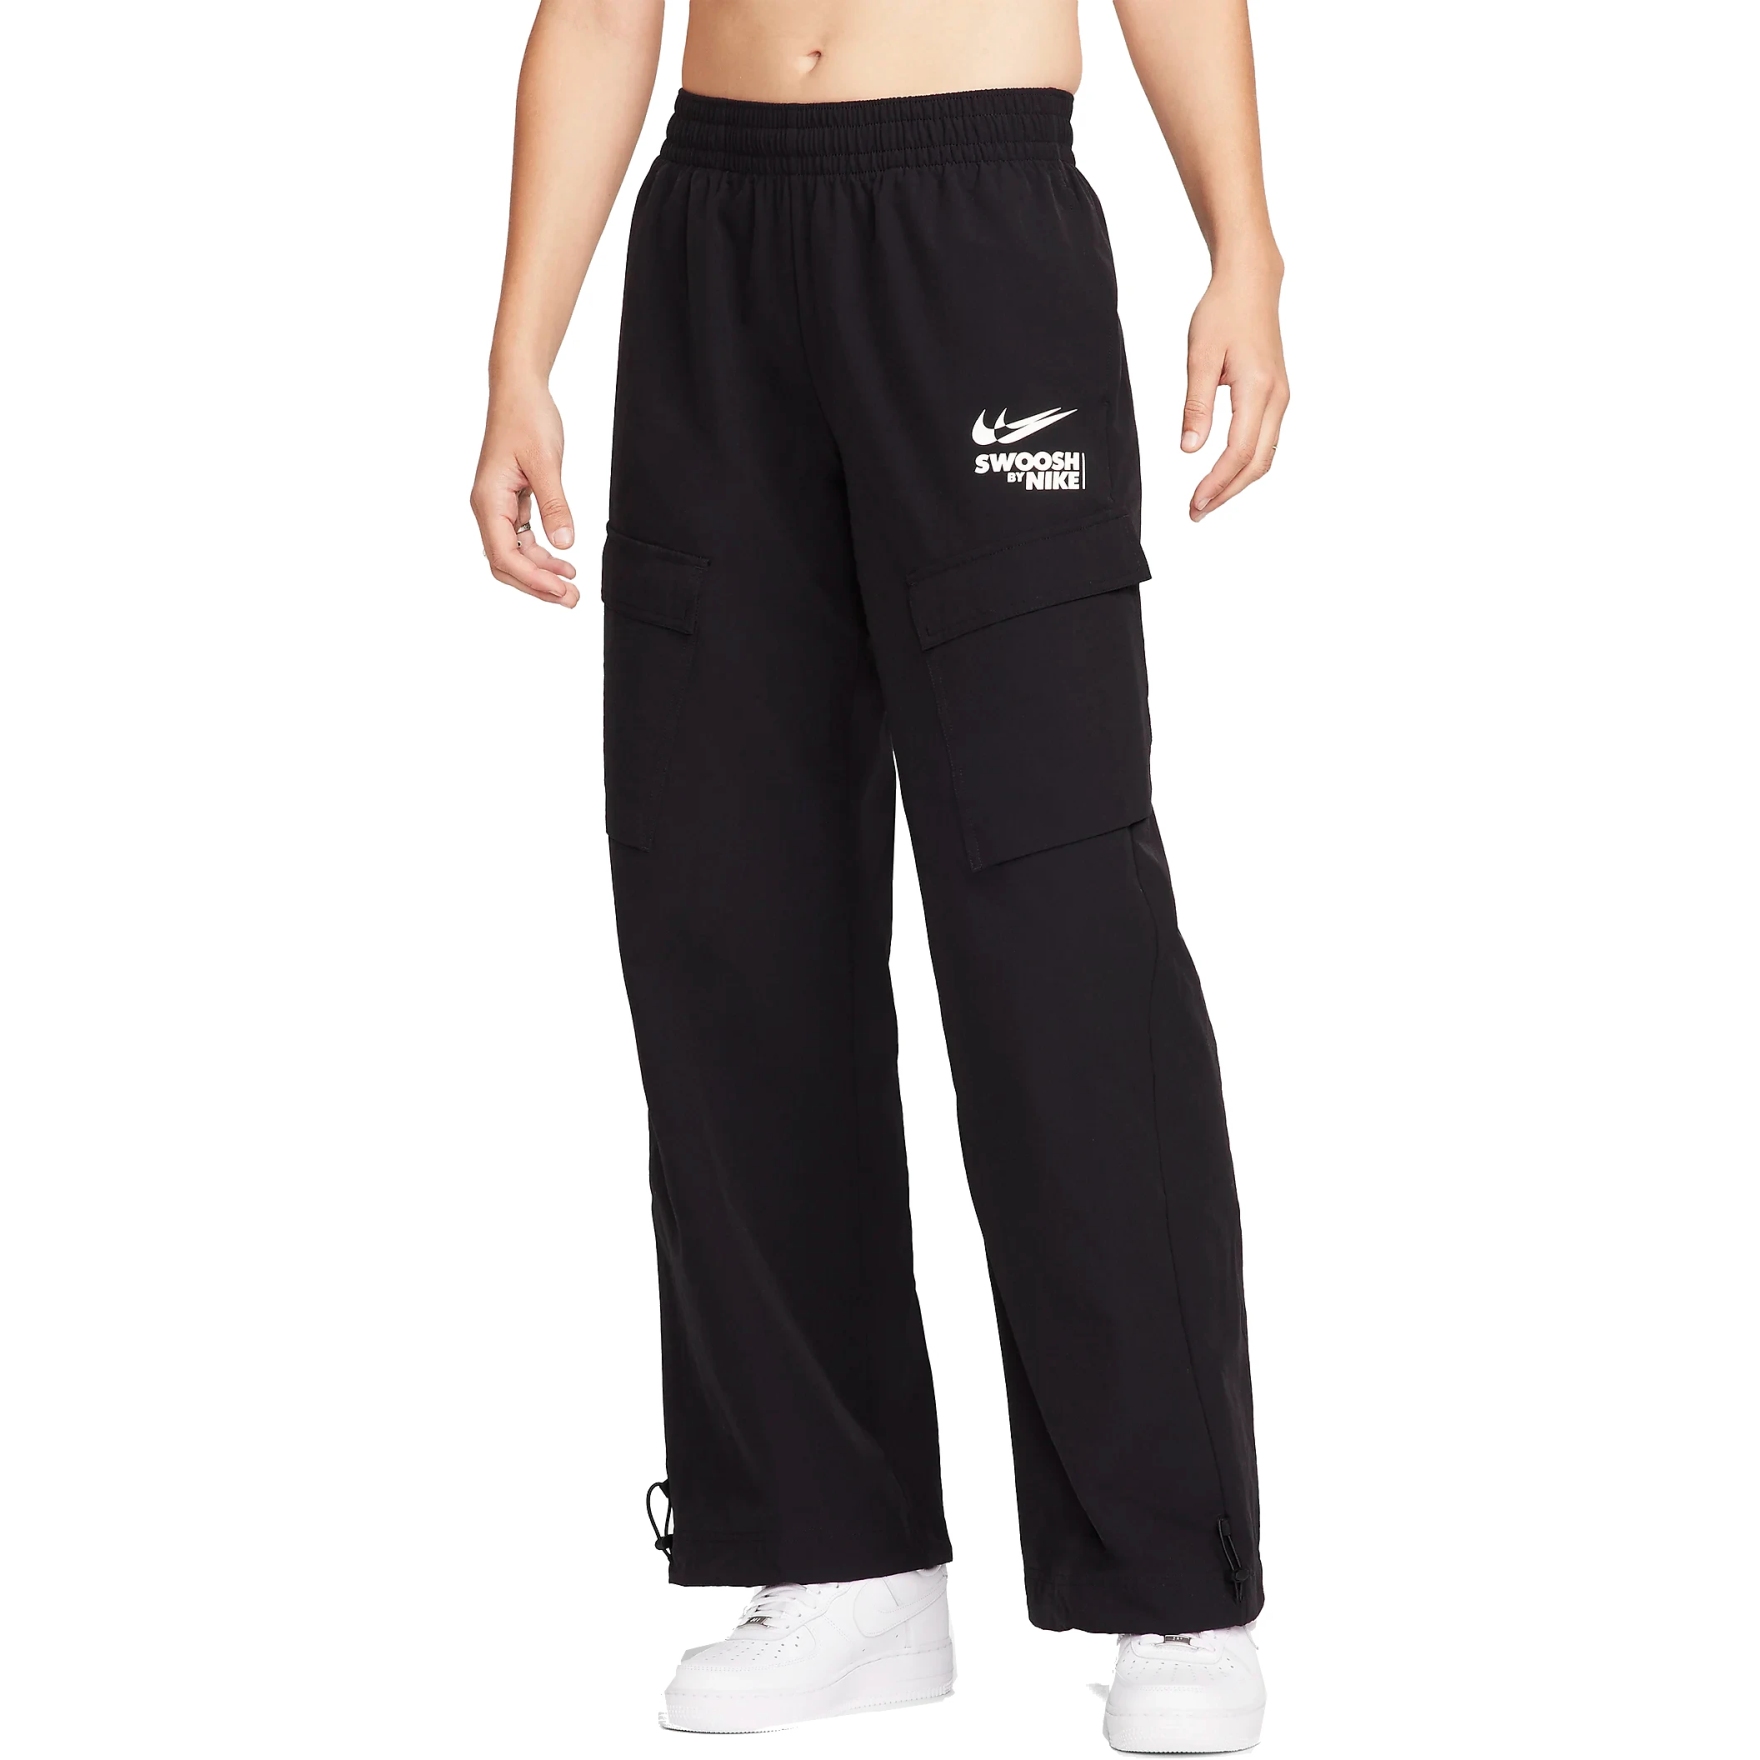 Produktbild von Nike Sportswear Cargo-Webhose für Damen - black/sail FZ4637-010